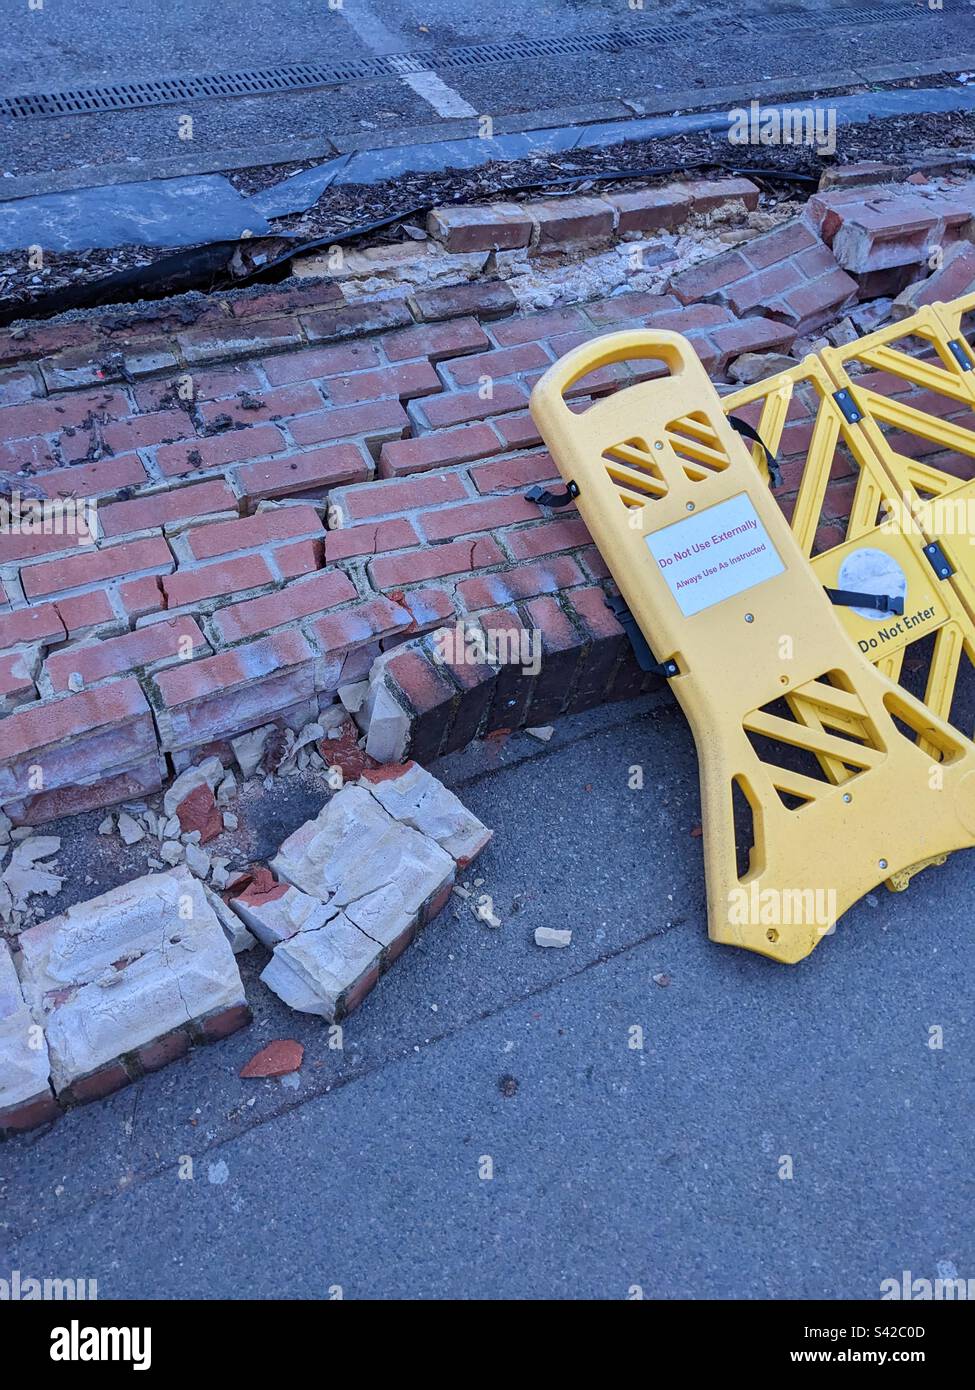 Die Mauer ist abgerissen, ein Auto mit gelbem Warnschild ist angefahren Stockfoto